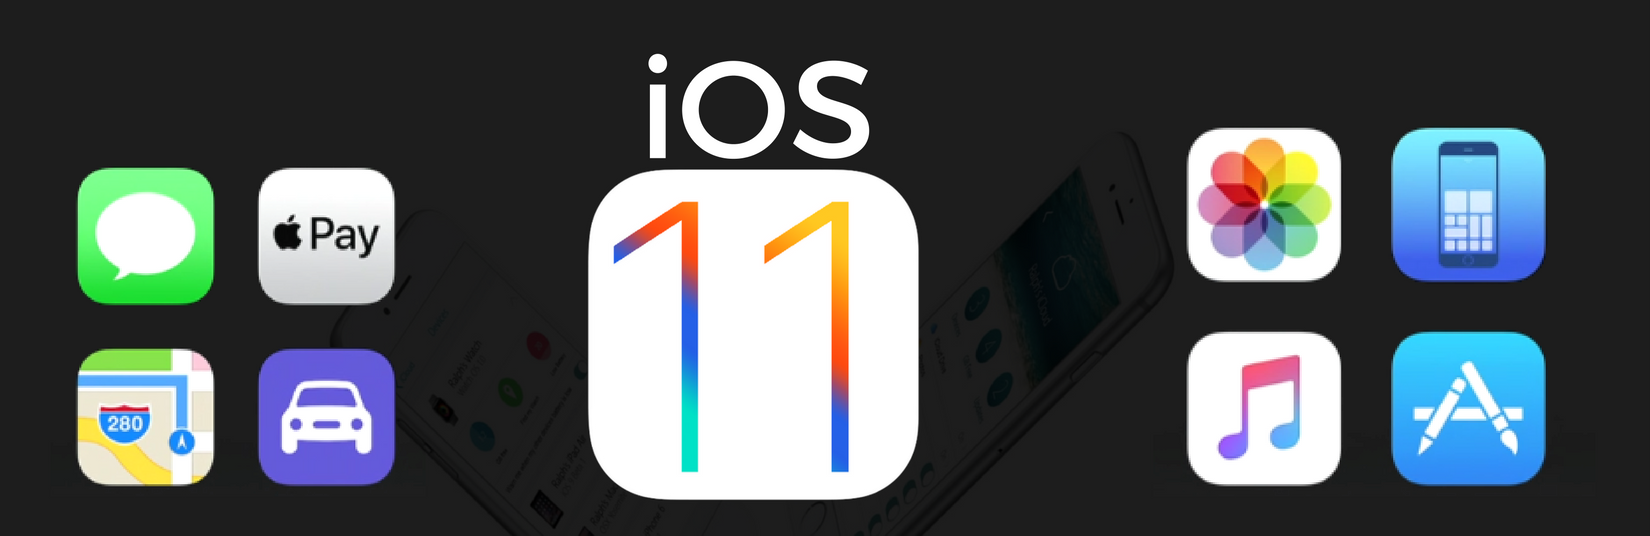 iOS 11 App Development